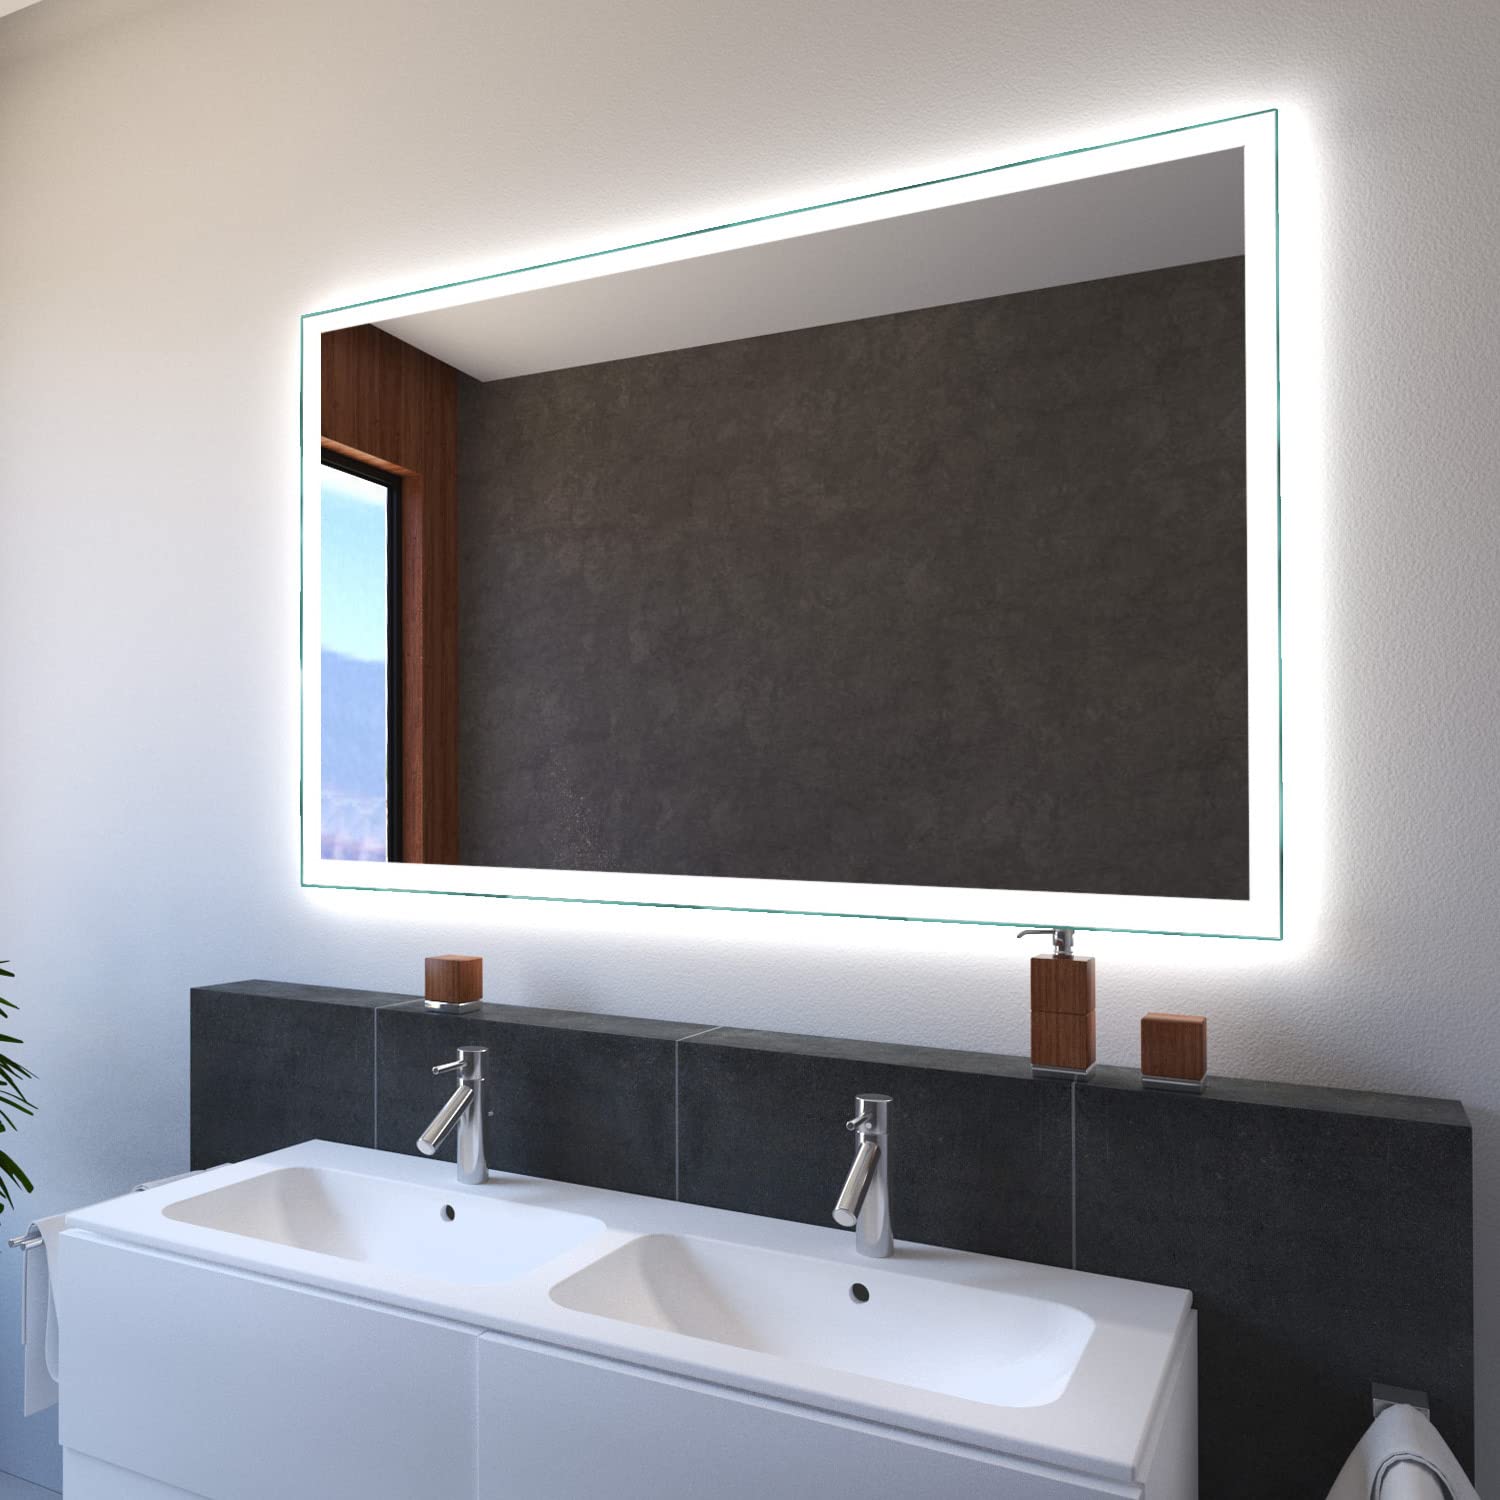 SARAR Wandspiegel mit LED-Beleuchtung 180x60cm Made in Germany Designo MA4110 Badspiegel Spiegel mit Beleuchtung Badezimmerspiegel nach-auf Maß